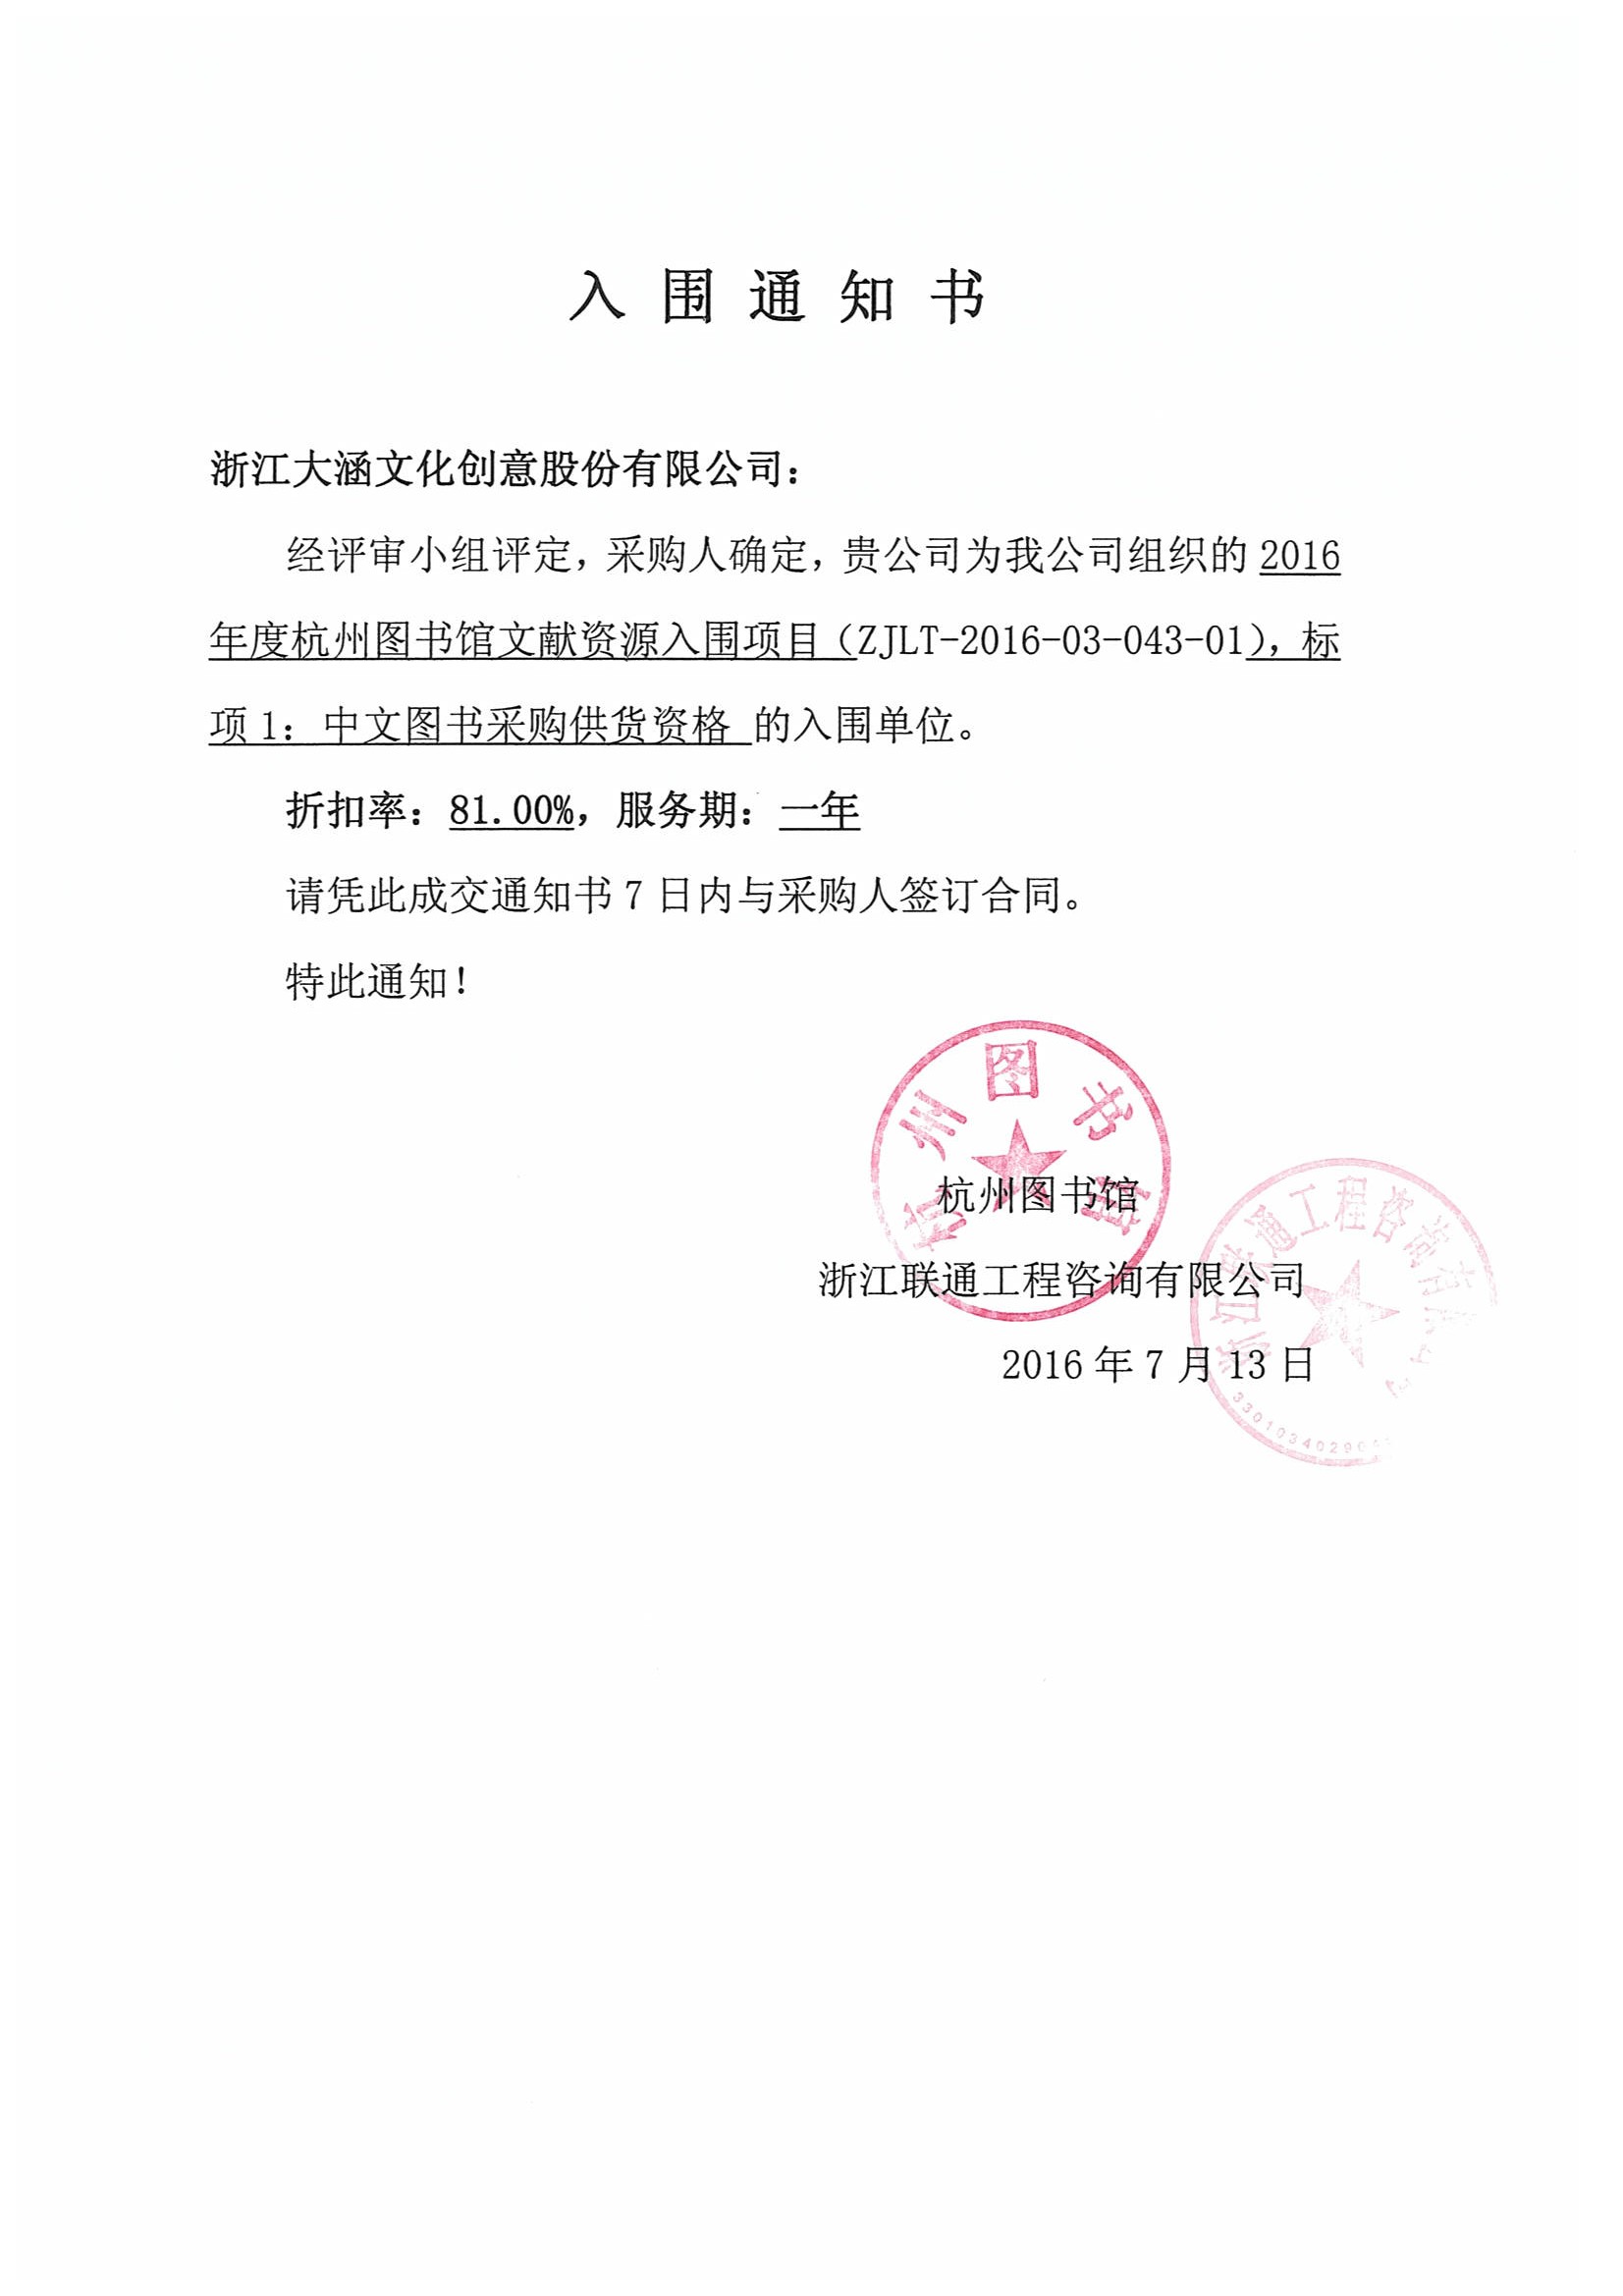 2016年杭州图书馆入围通知书、标项一、标项八